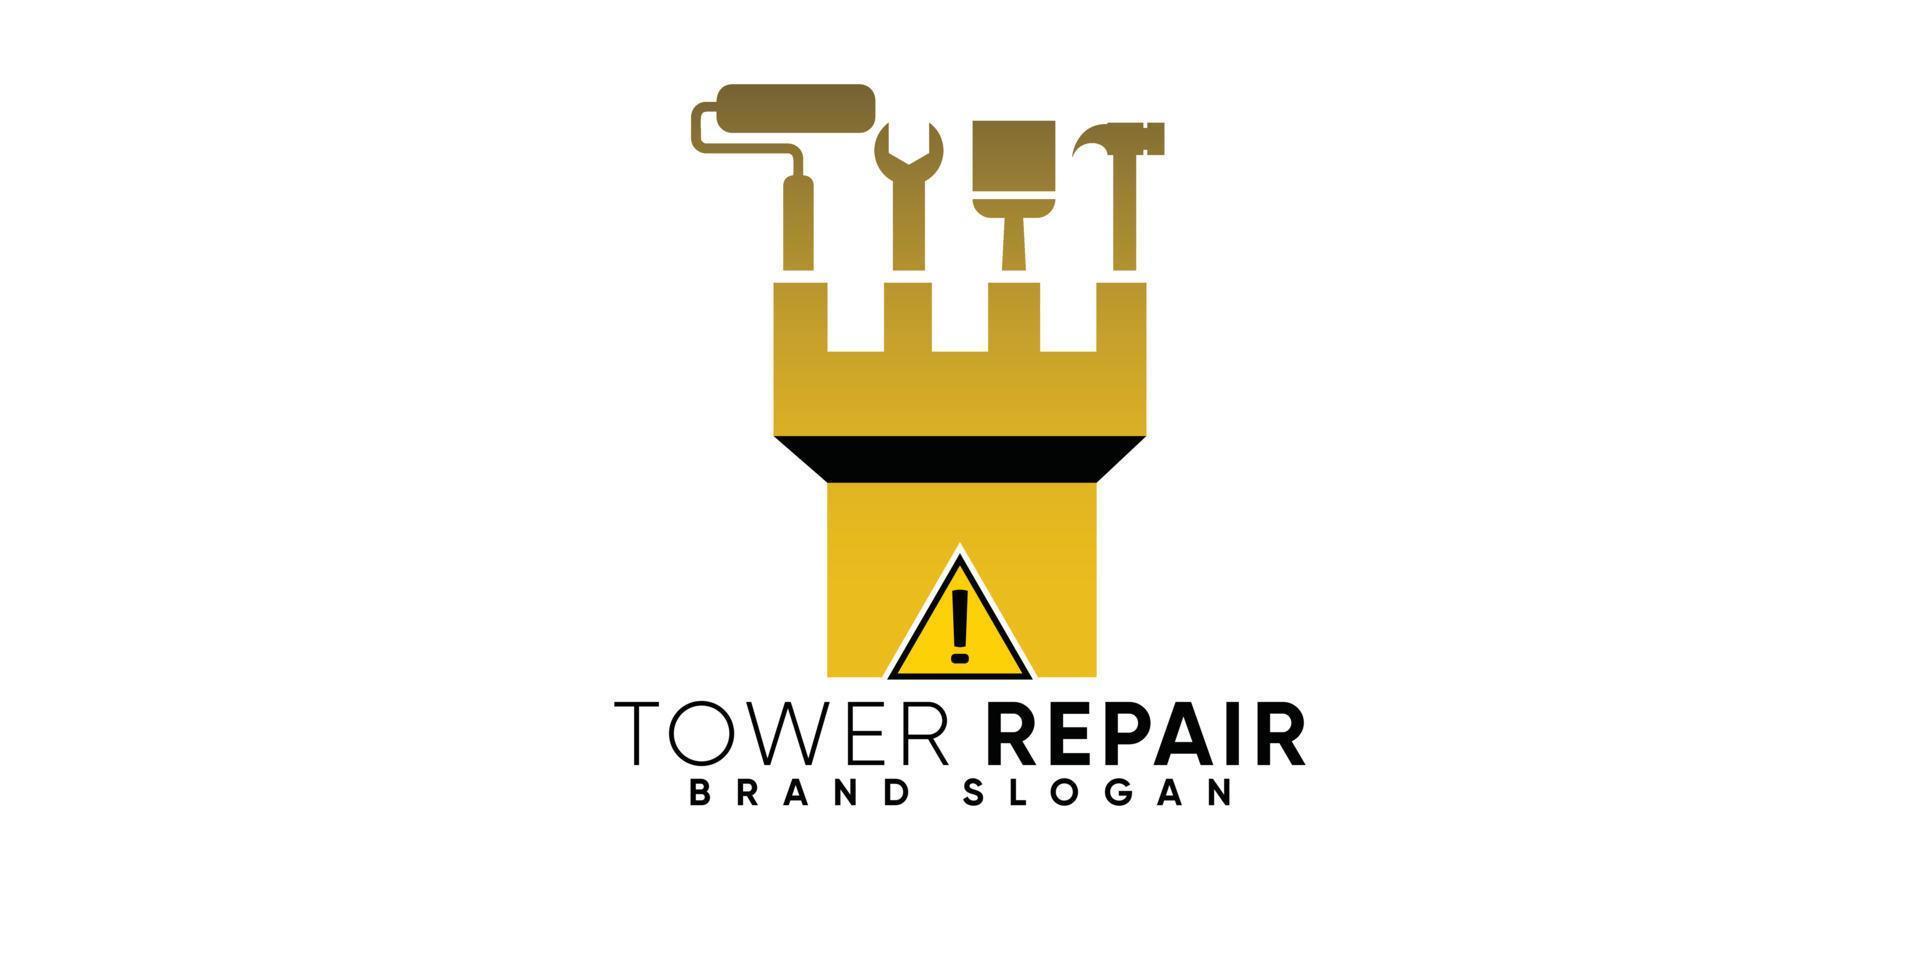 Torre riparazione logo con moderno stile premio vettore